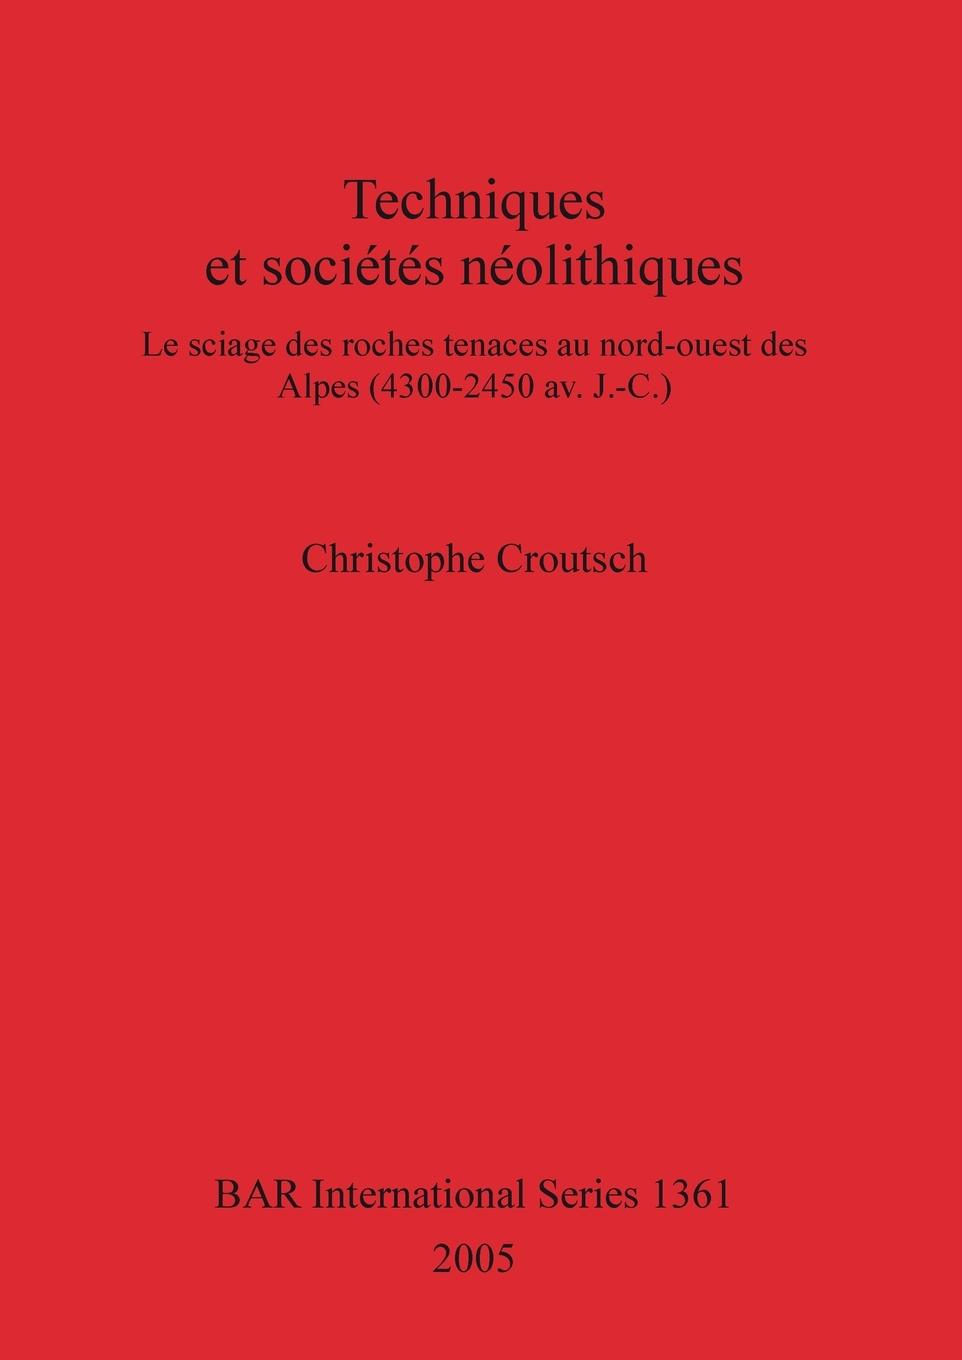 Carte Techniques et societes neolithiques Christophe Croutsch